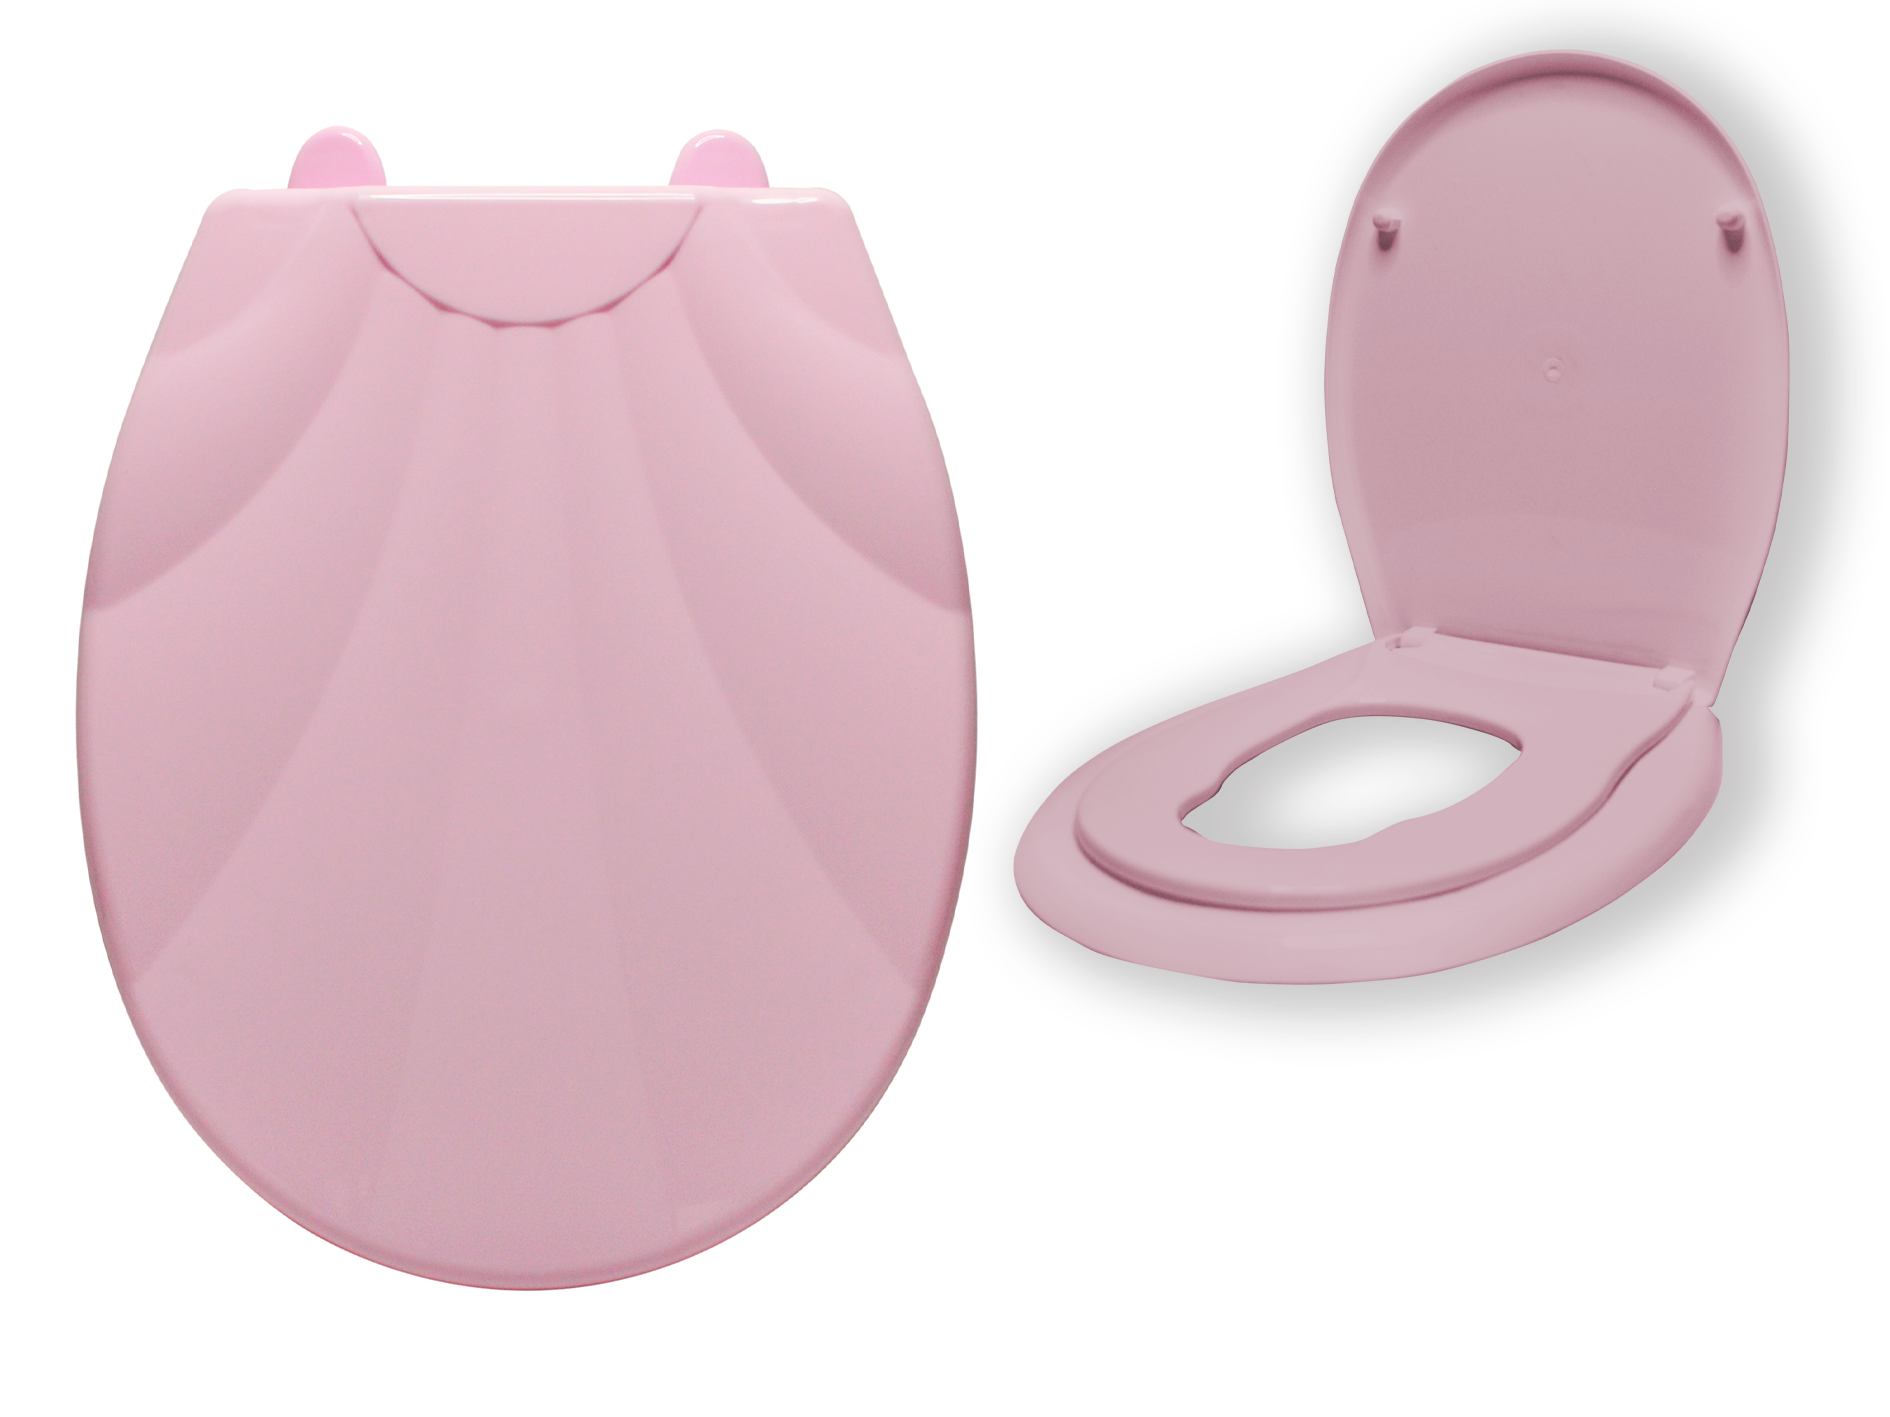 Сиденье для унитаза ATLANFA с детским вкладышем LUX Ракушка, розовый рюкзак детский на молнии наружный карман розовый серый